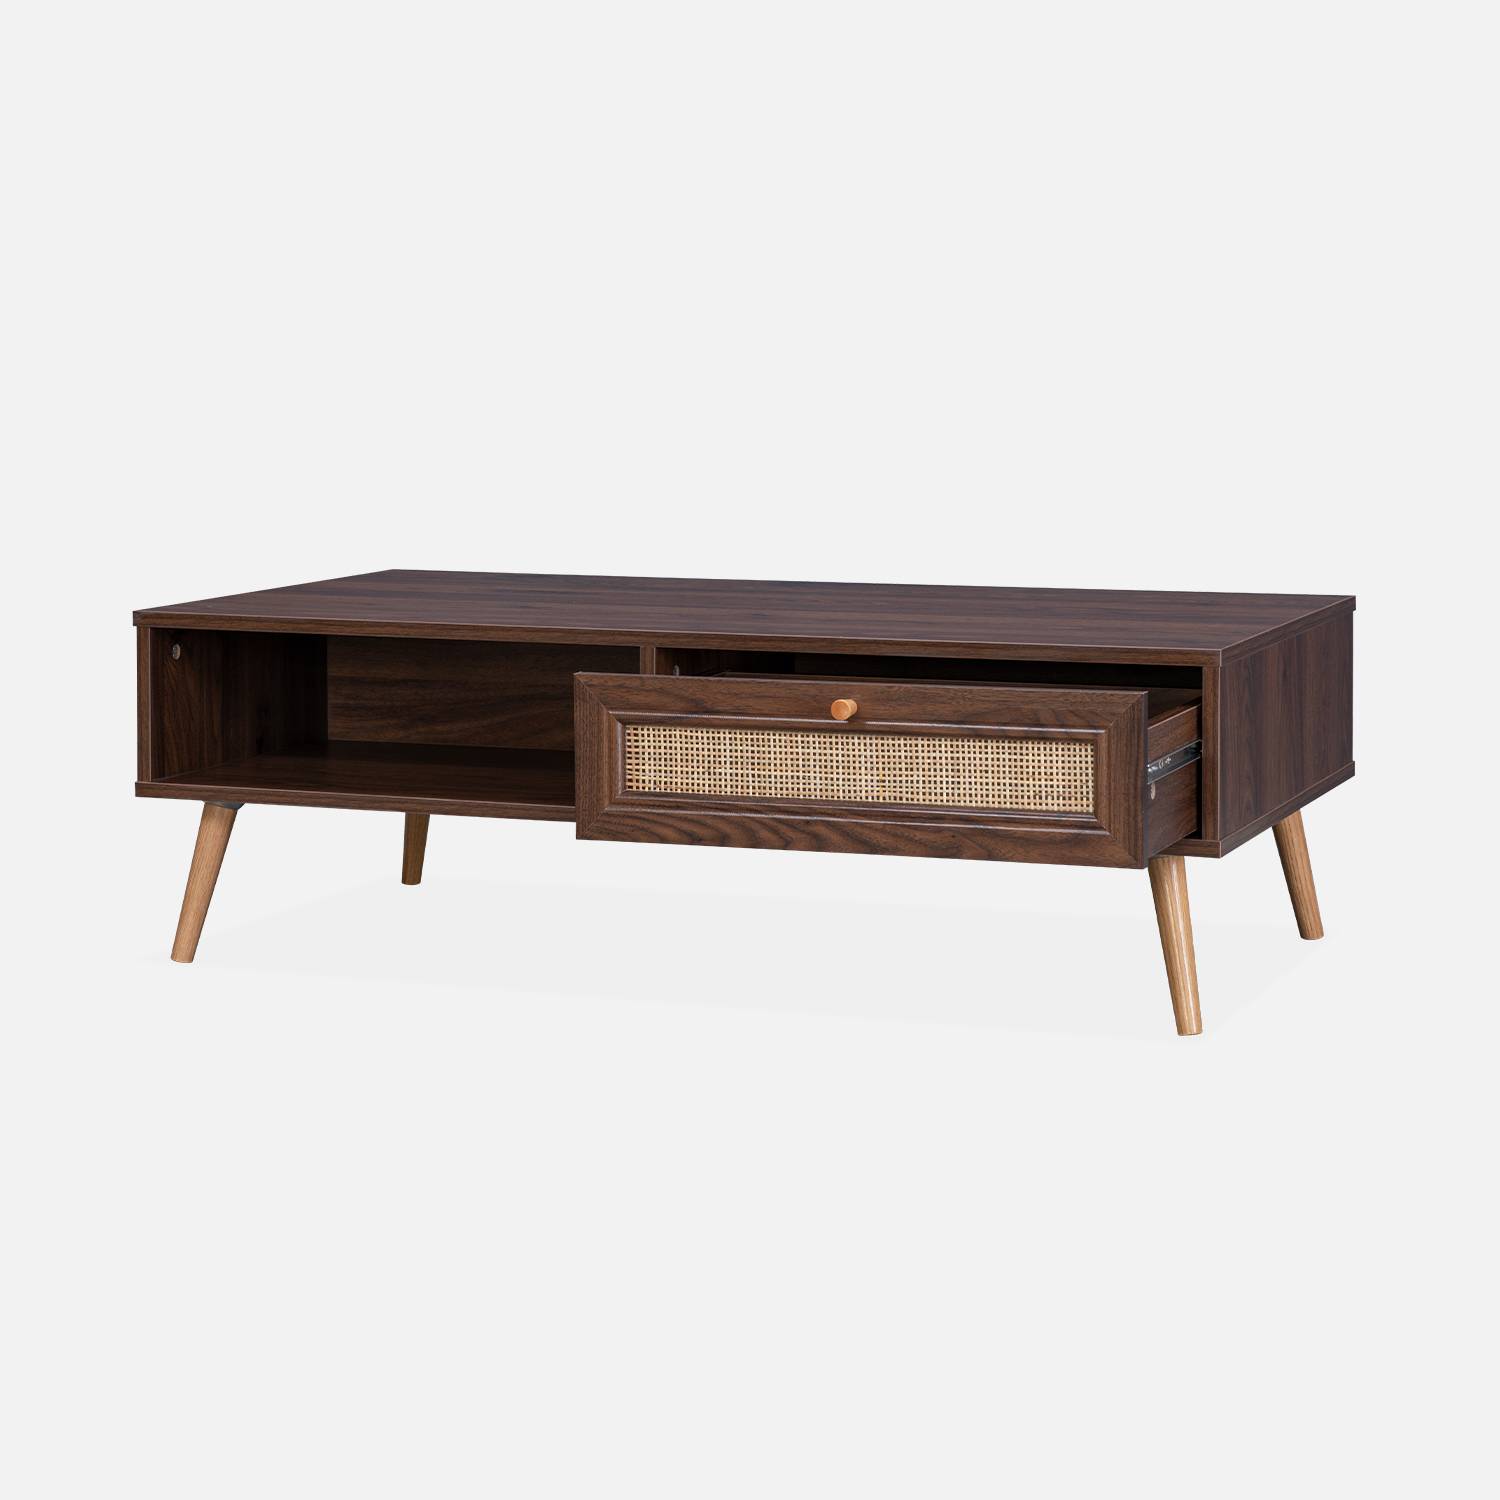 Tavolino cannage 110x59x39cm - Bohème - colore legno scuro, 1 cassetto, 1 vano portaoggetti, gambe scandinave,sweeek,Photo4